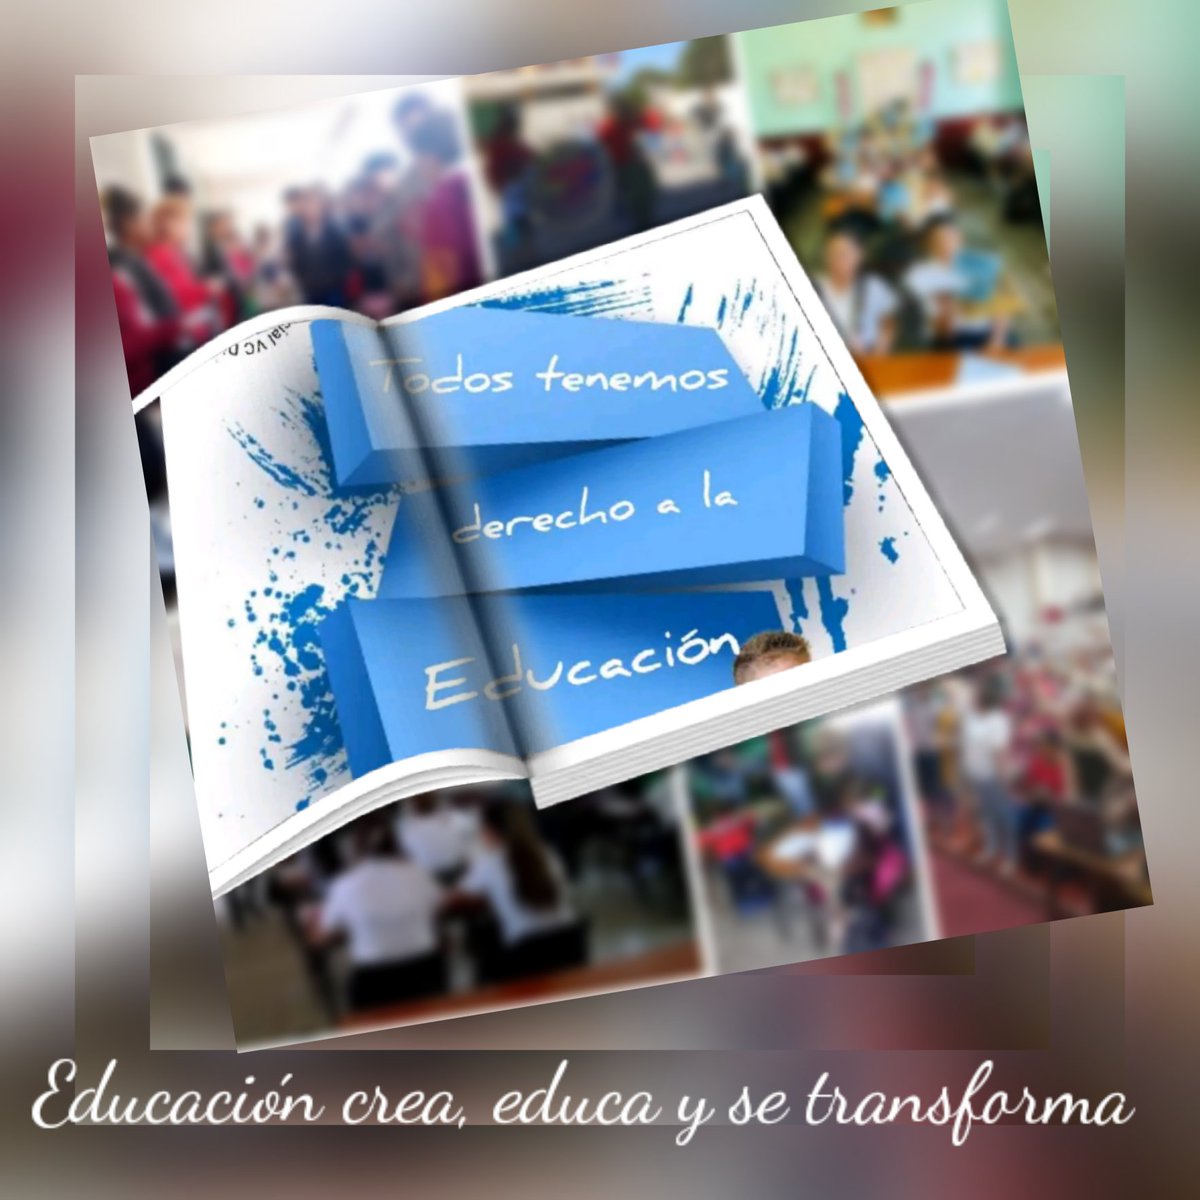 'La Educación es la única arma capaz de transformar el mundo' 
#EducacióndeCalidad  @CubaMined